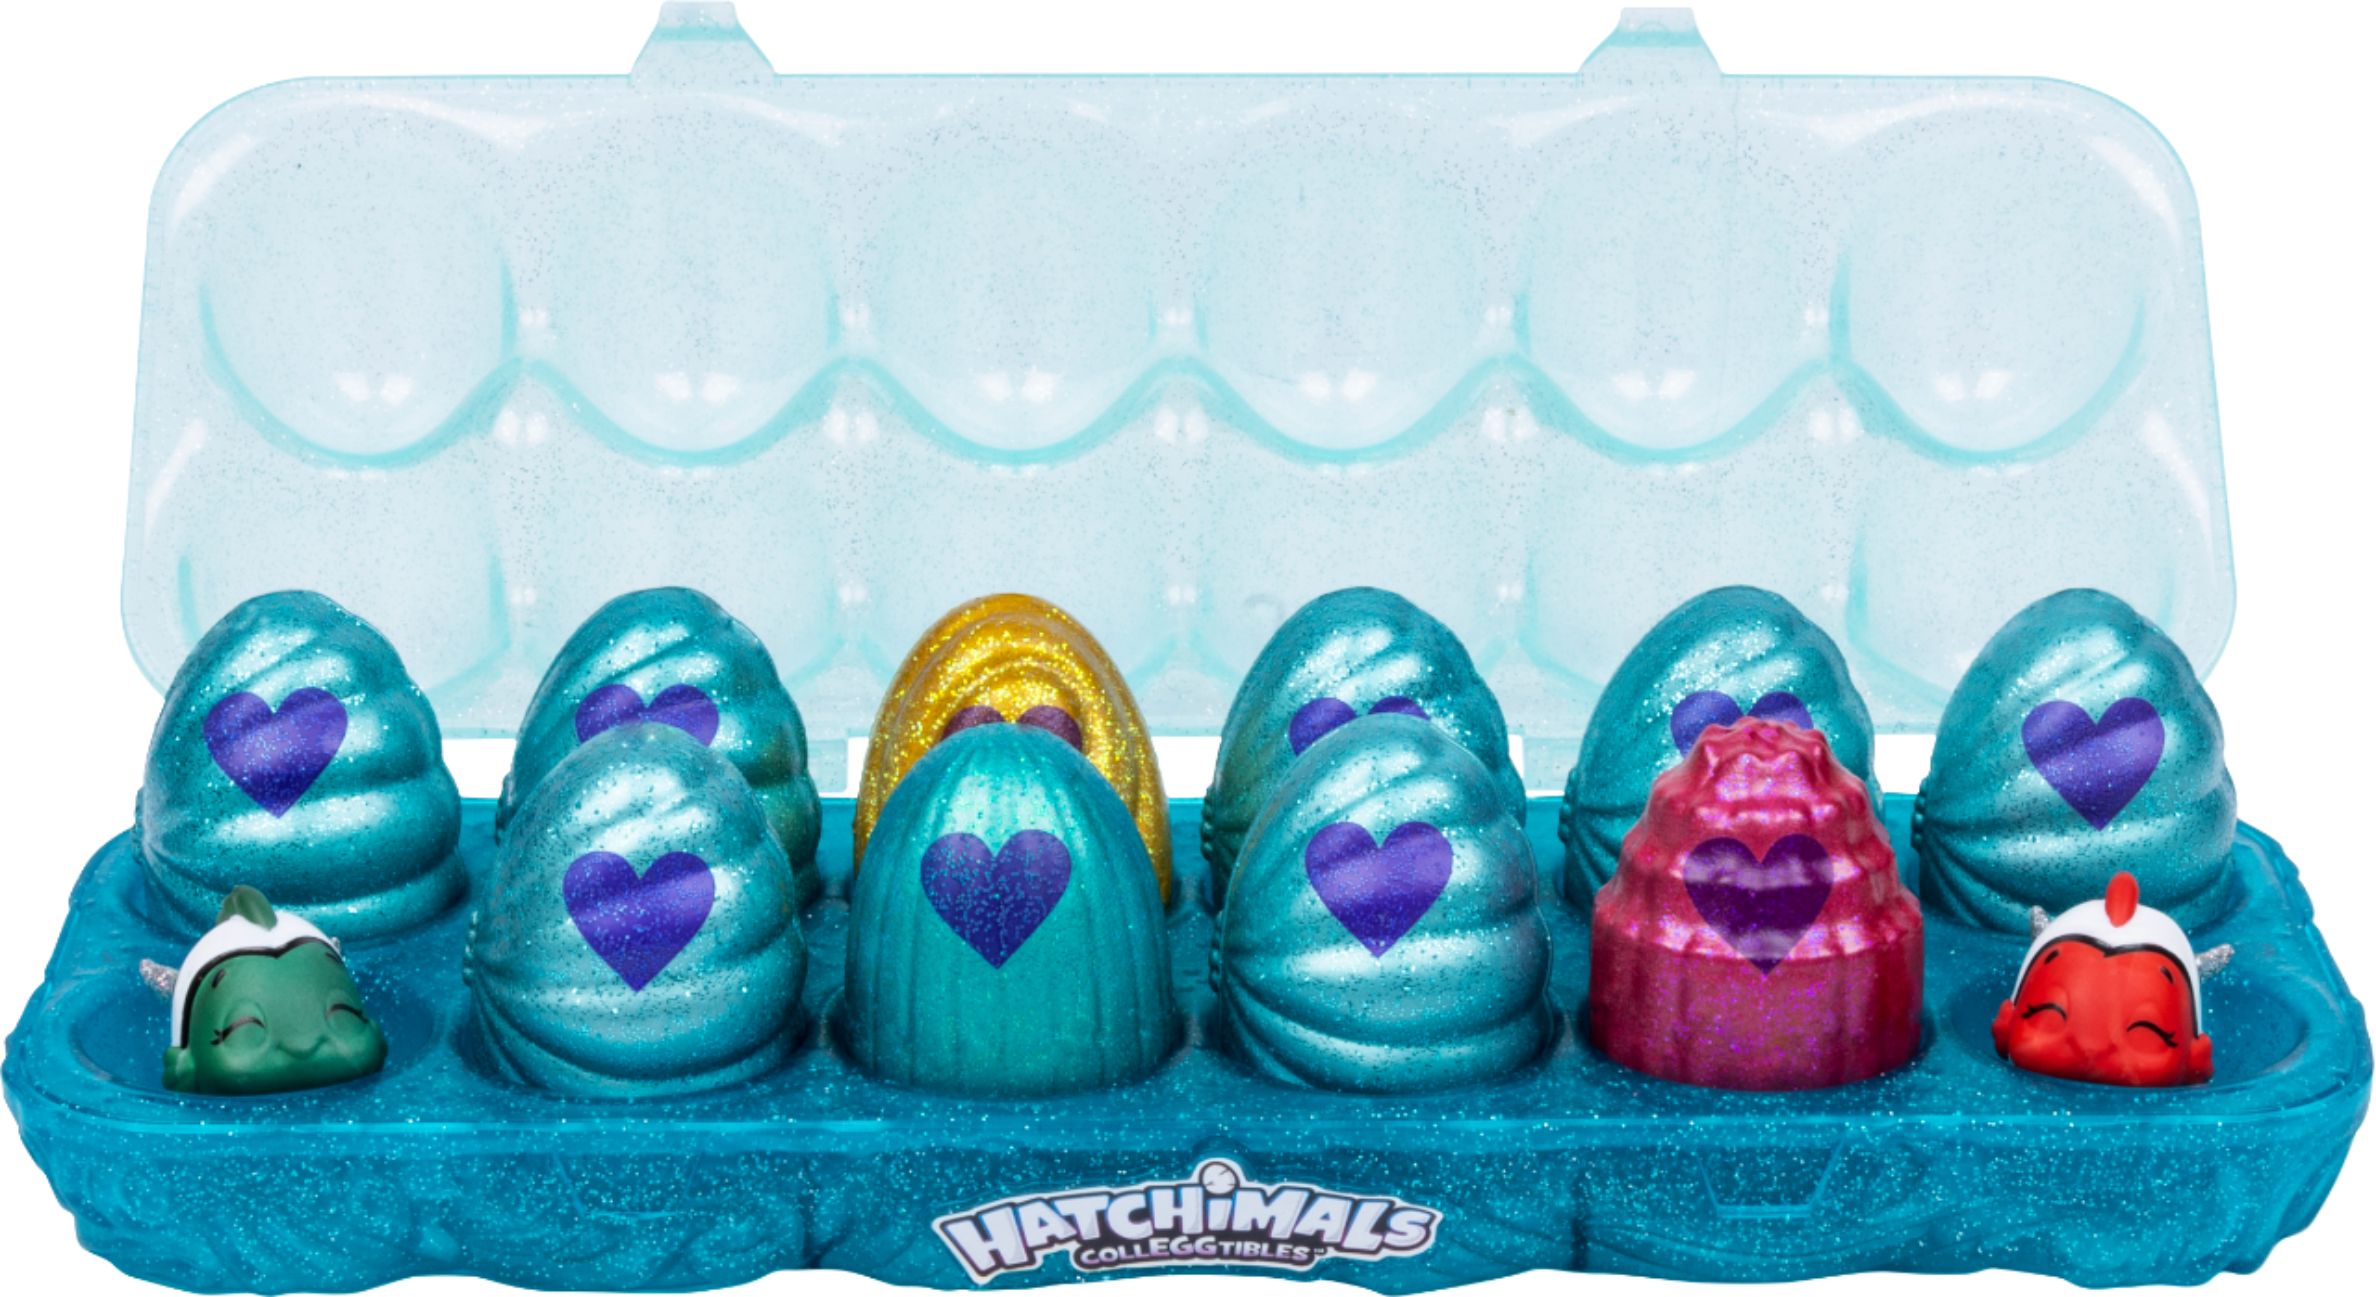 Hatchimals CollEGGtibles Brilho, 12-Pack com ovos embrulhados